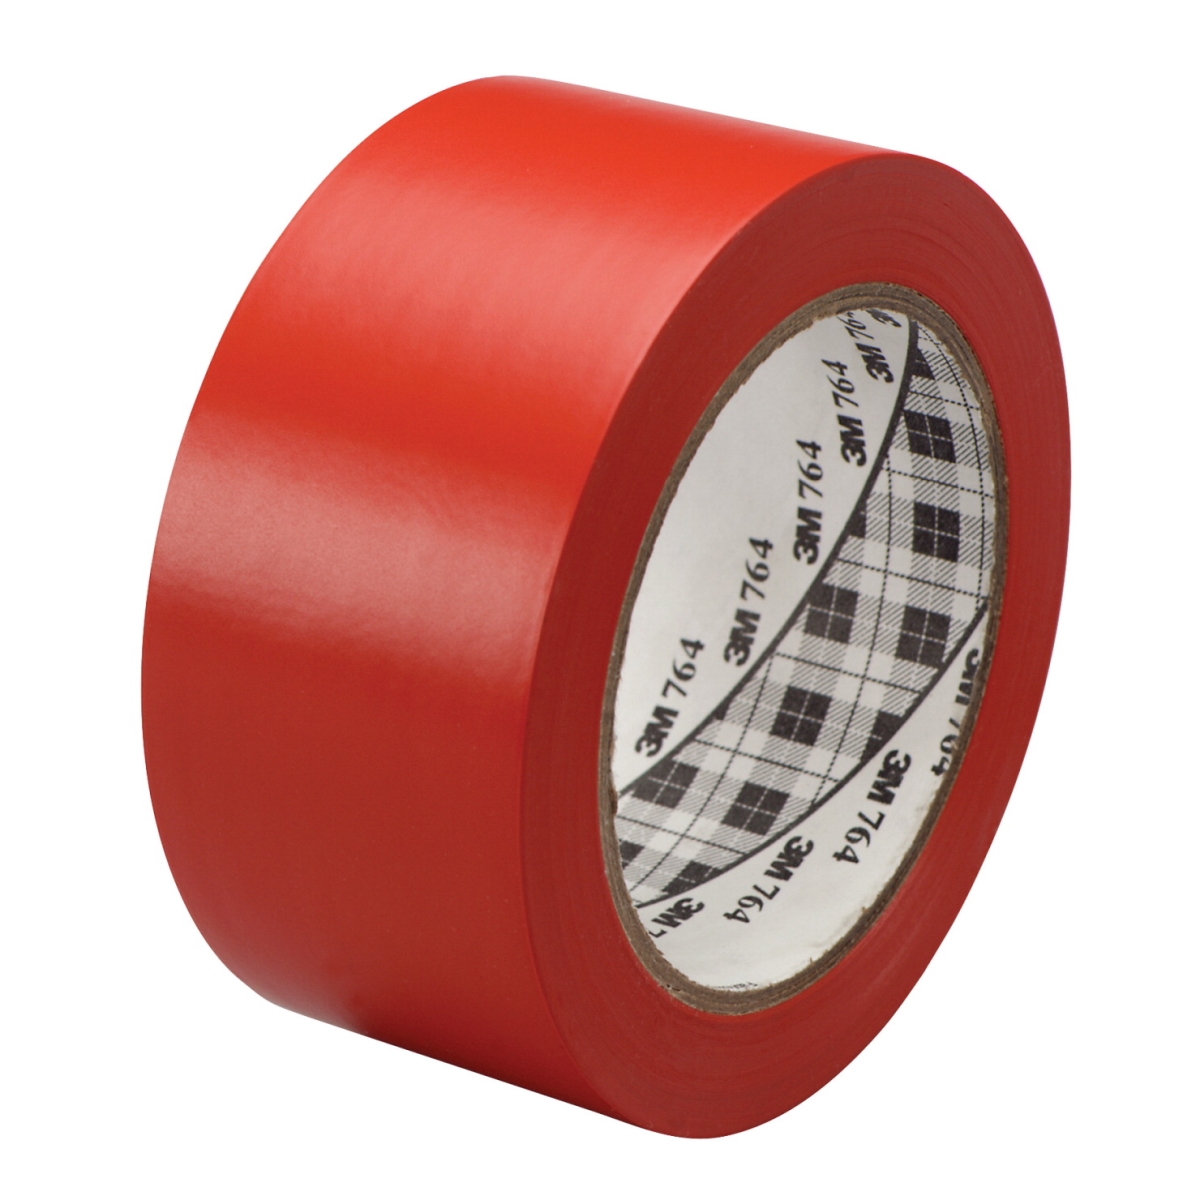 General Purpose Wear Resistant Floor Marking Tape Roll, 2 In. X 36 Yard, Vinyl - Red